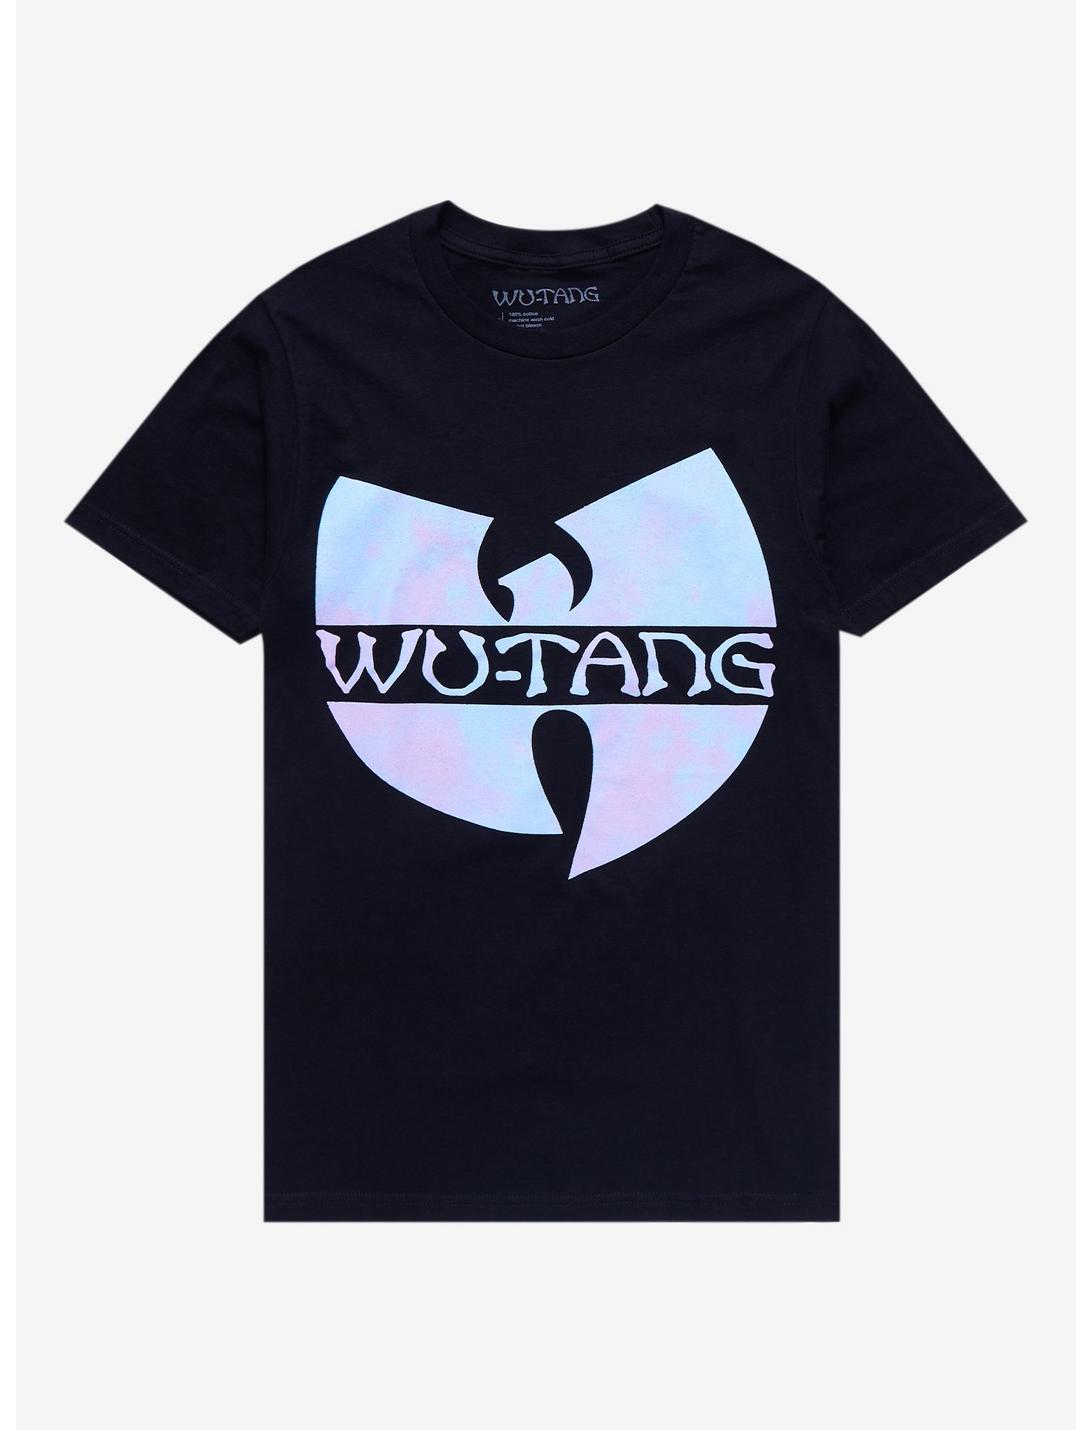 Wu-Tang Clan Pastel Logo Boyfriend Fit Girls T-Shirt, BLACK, hi-res